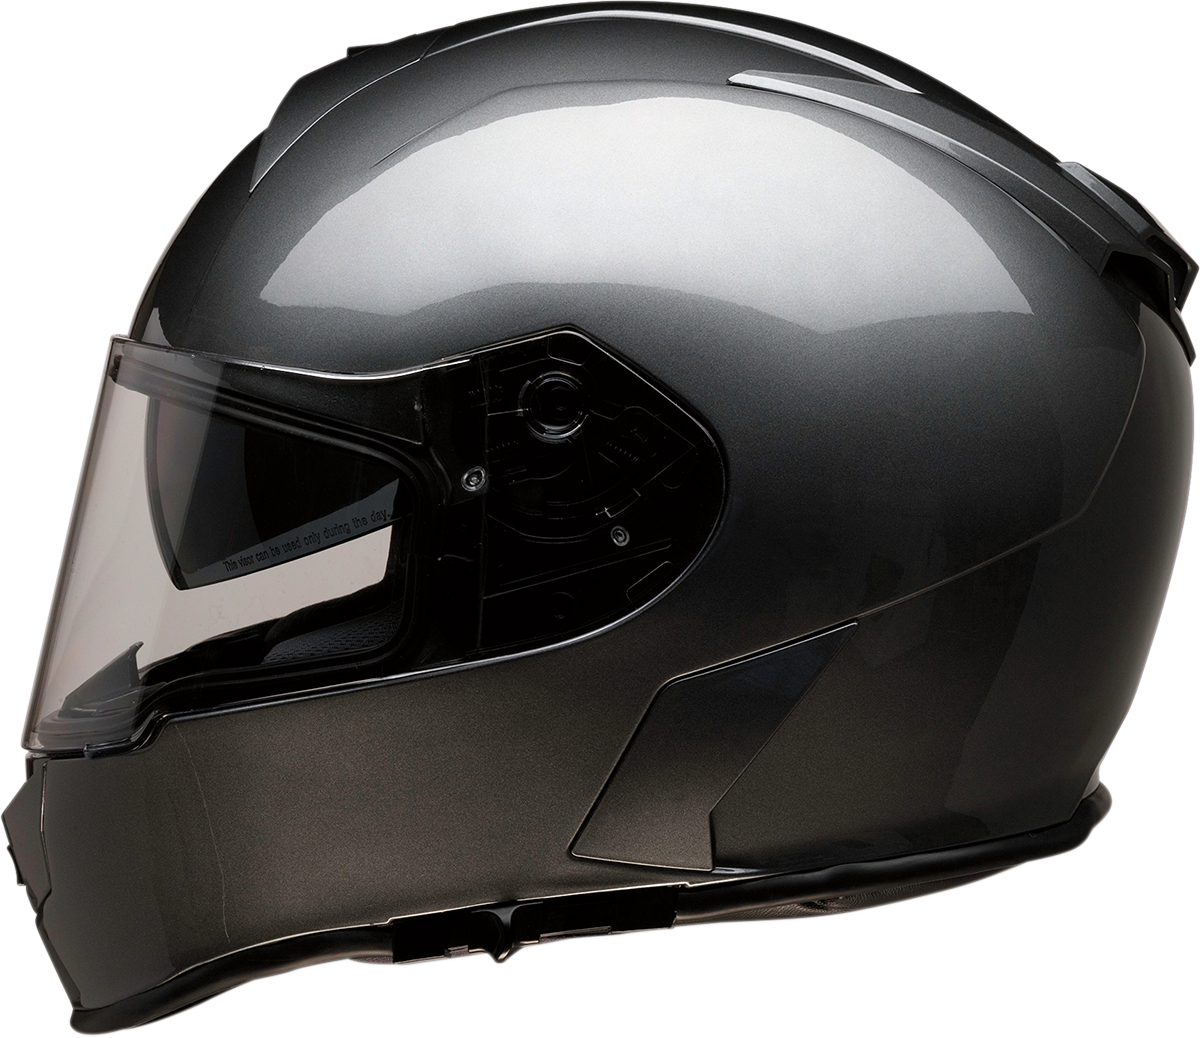 Z1R Warrant Helmet - Dark Silver - Medium 0101-13160